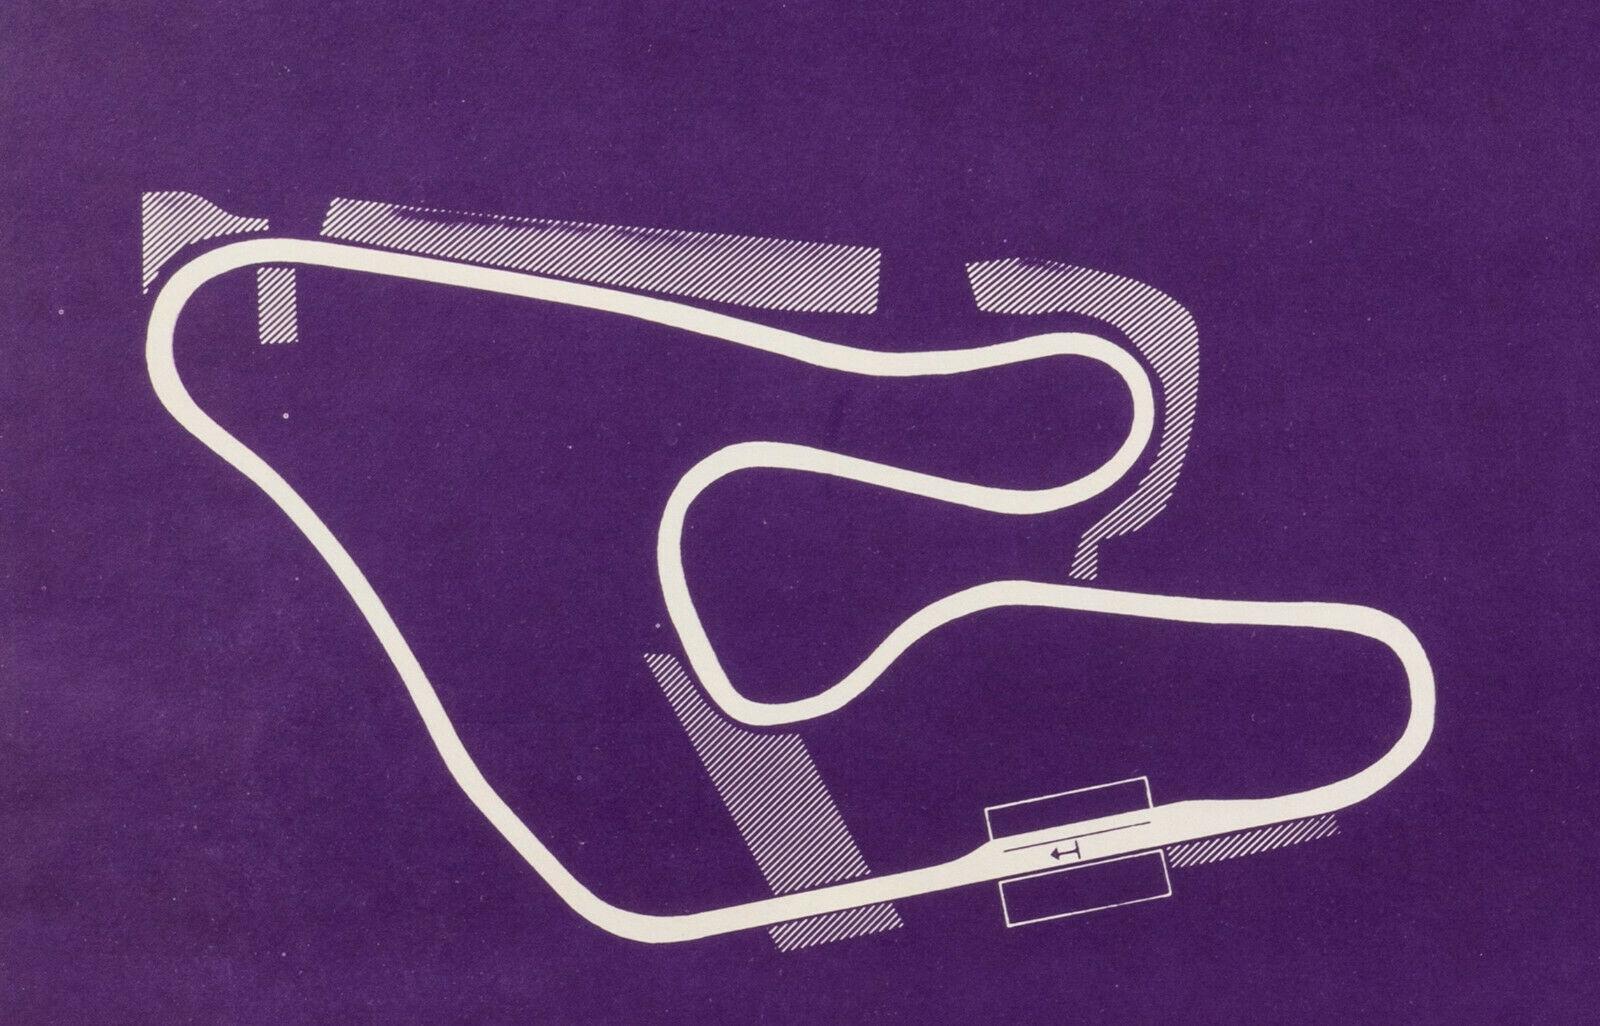 Original-Vintage-Formel-1-Poster, Österreichring-Rennstrecke, ca. 1987

Die Rennstrecke Spielberg, früher Österreichring, dann A1-Ring und jetzt Red Bull Ring genannt, ist eine Rennstrecke in der Gemeinde Spielberg in Österreich. Oft wird